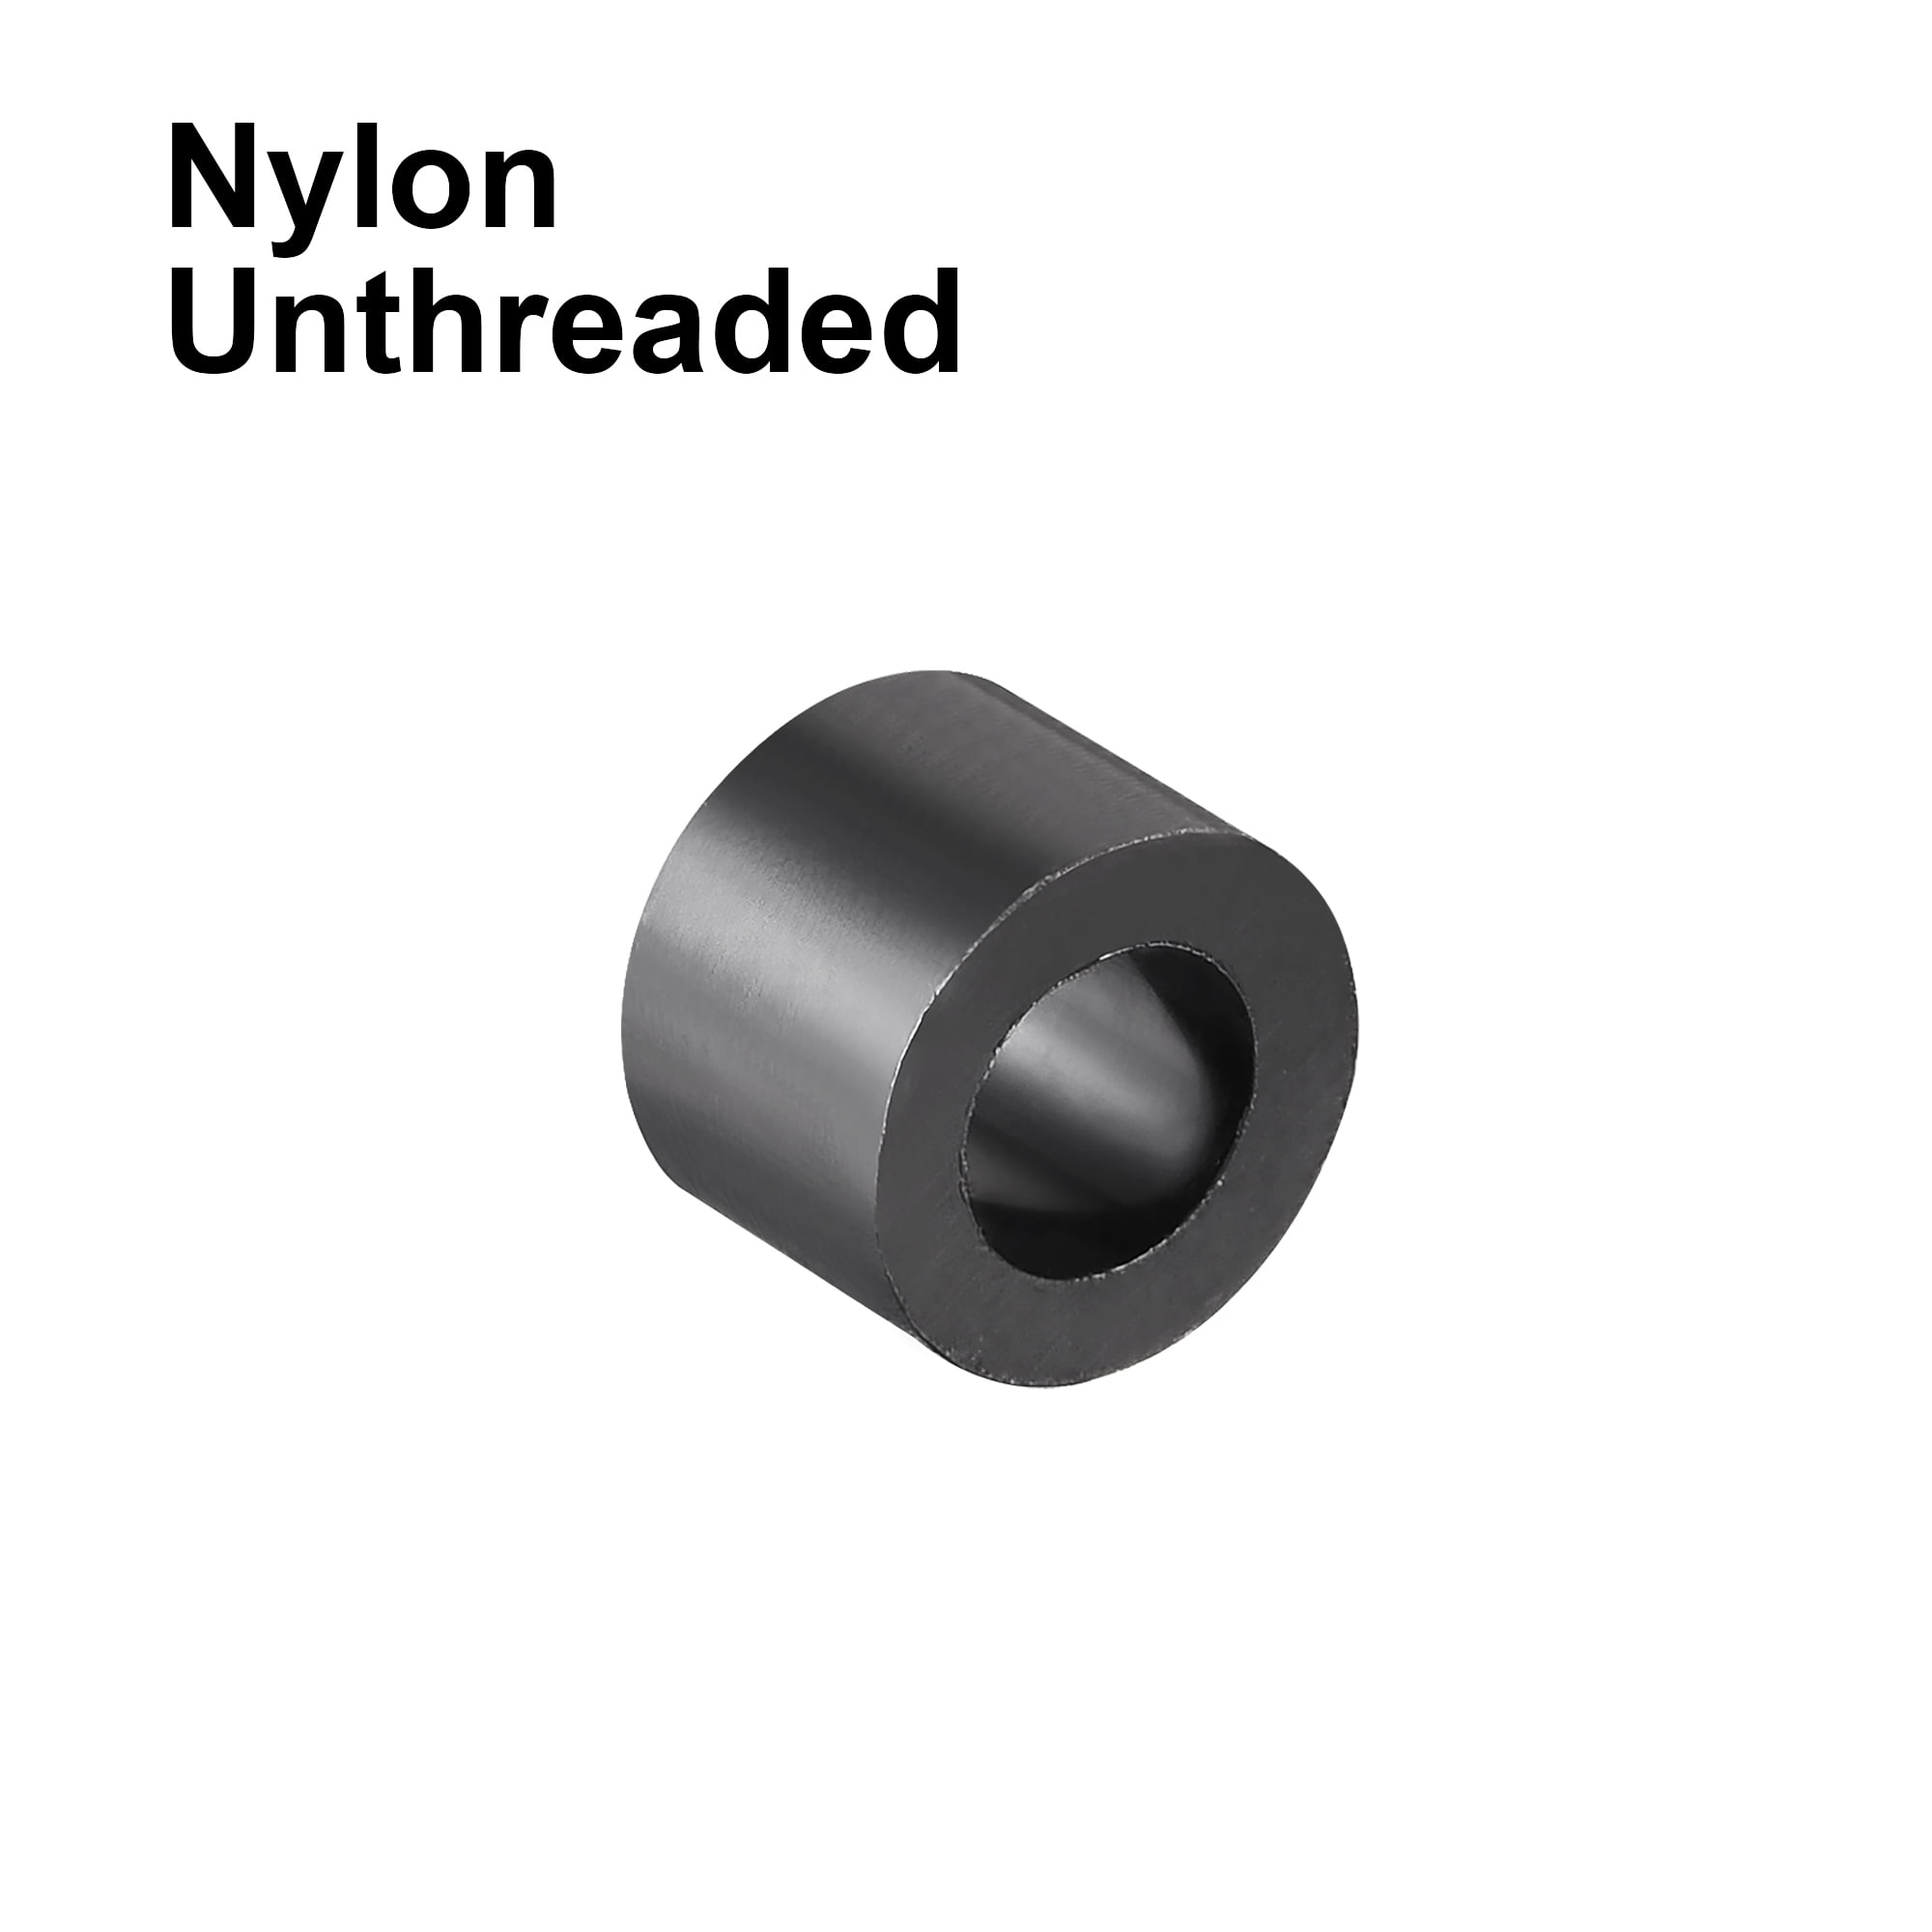 Nylon Round Spacer Washer 4.2mmx7mmx5mm Unthreaded for M4 Screws Black 100Pcs 